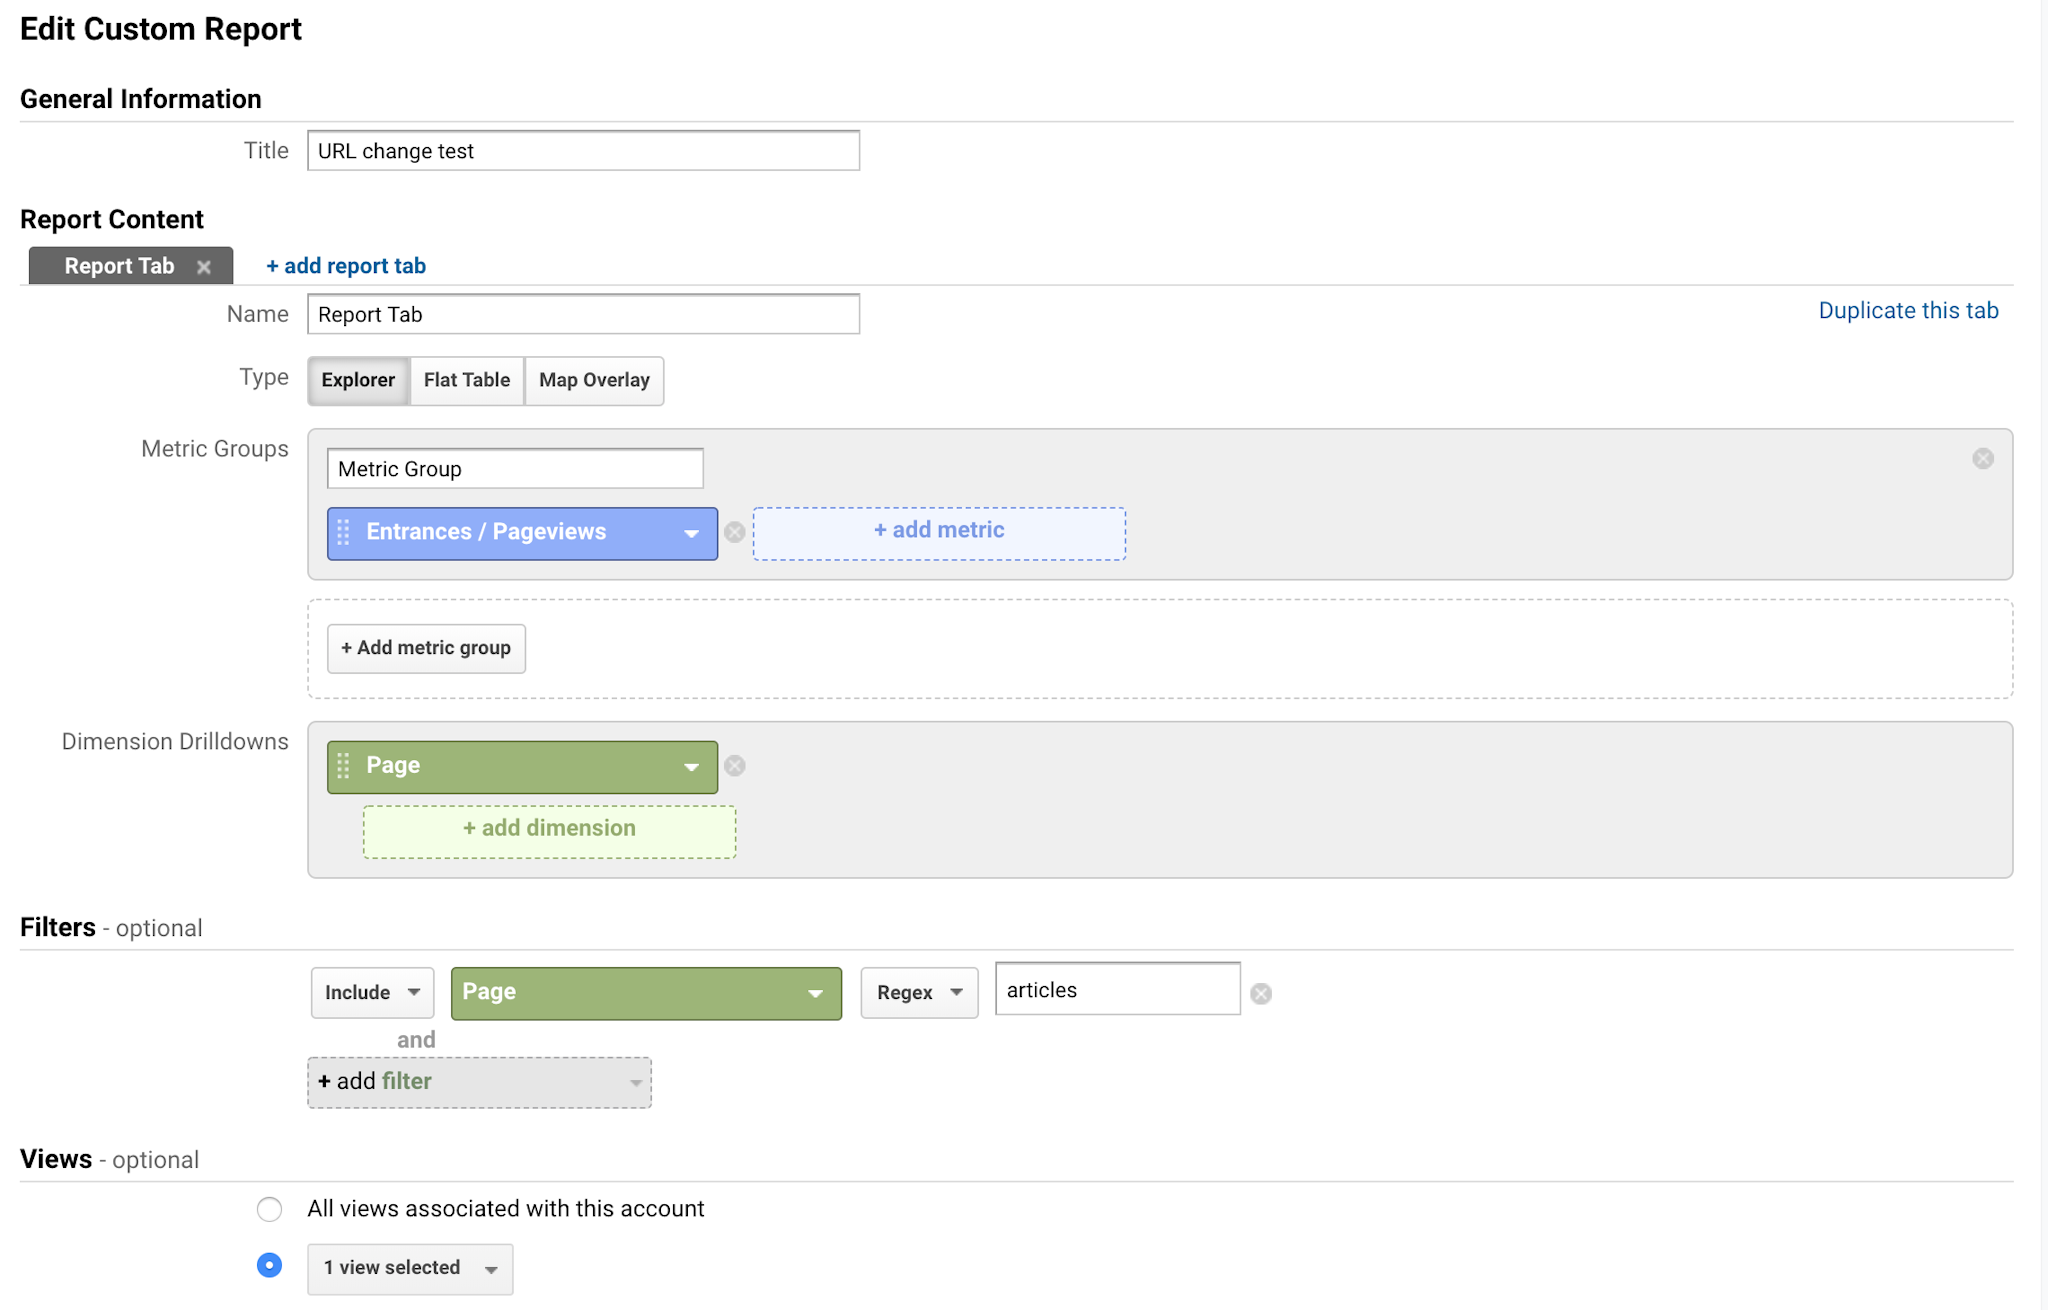 Screenshot of the Google Analytics Customization nav bar